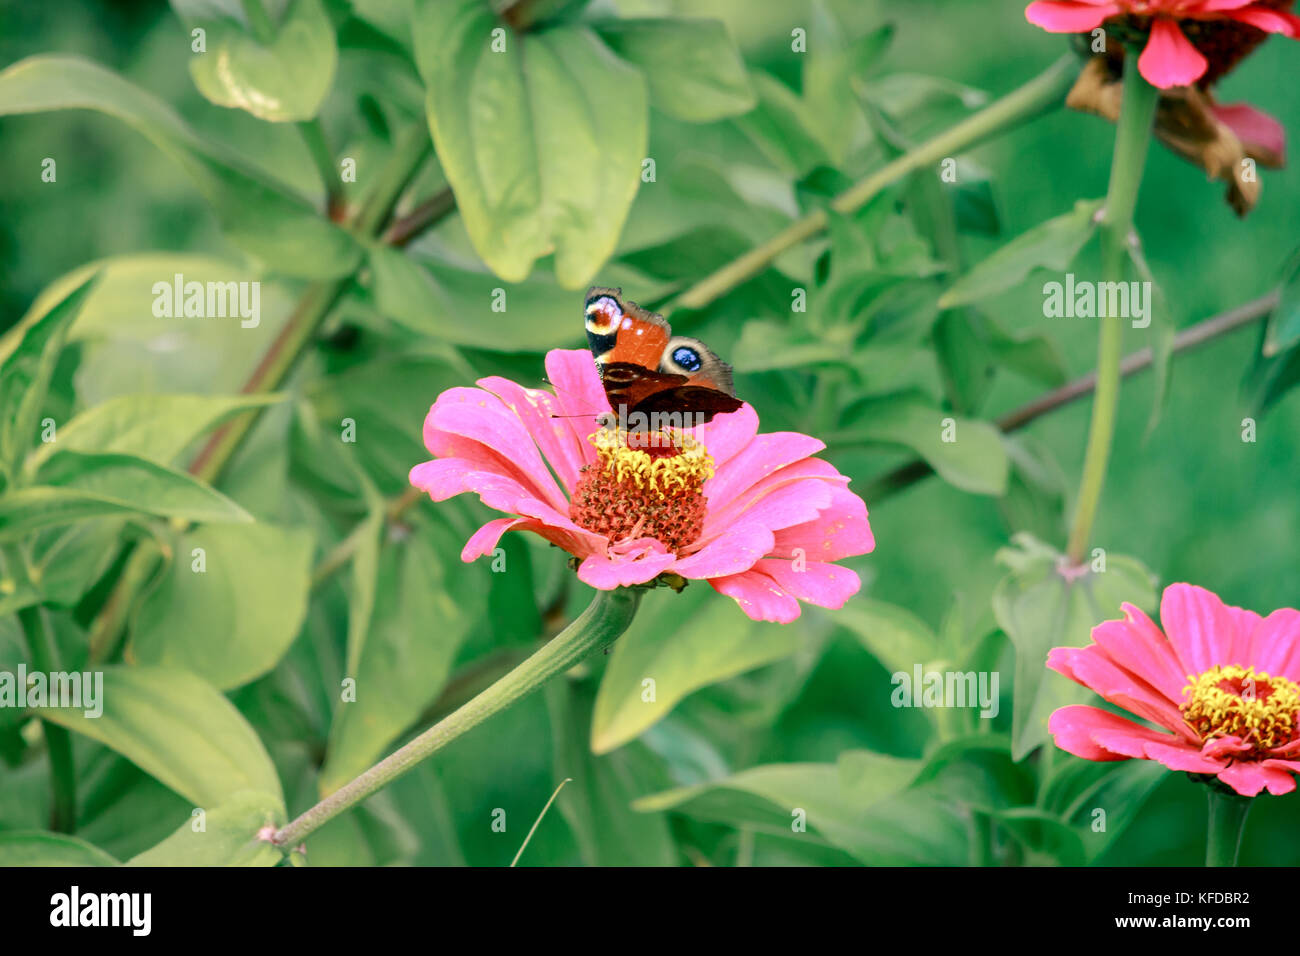 Cerrar acuerdo de insecto mariposa pavo real de flor en flor en el jardín de plantas de Bush naturaleza recogiendo polen o néctar en verano Foto de stock